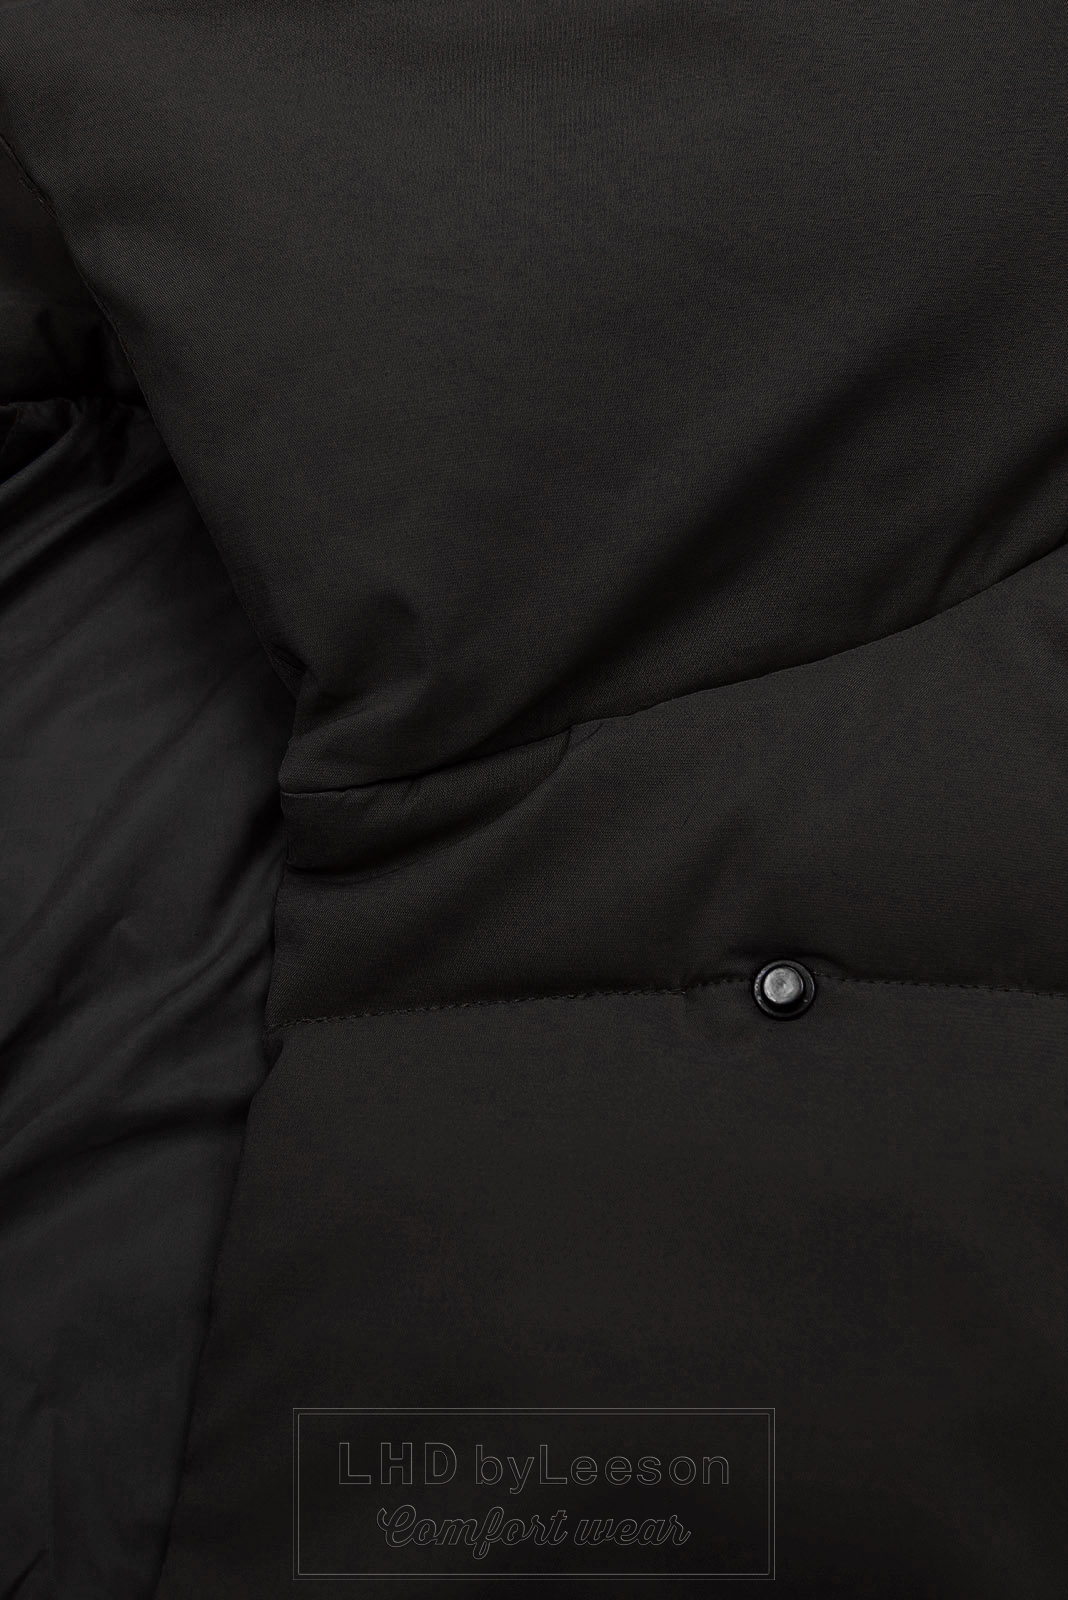 Czarna pikowana kurtka zimowa z paskiem